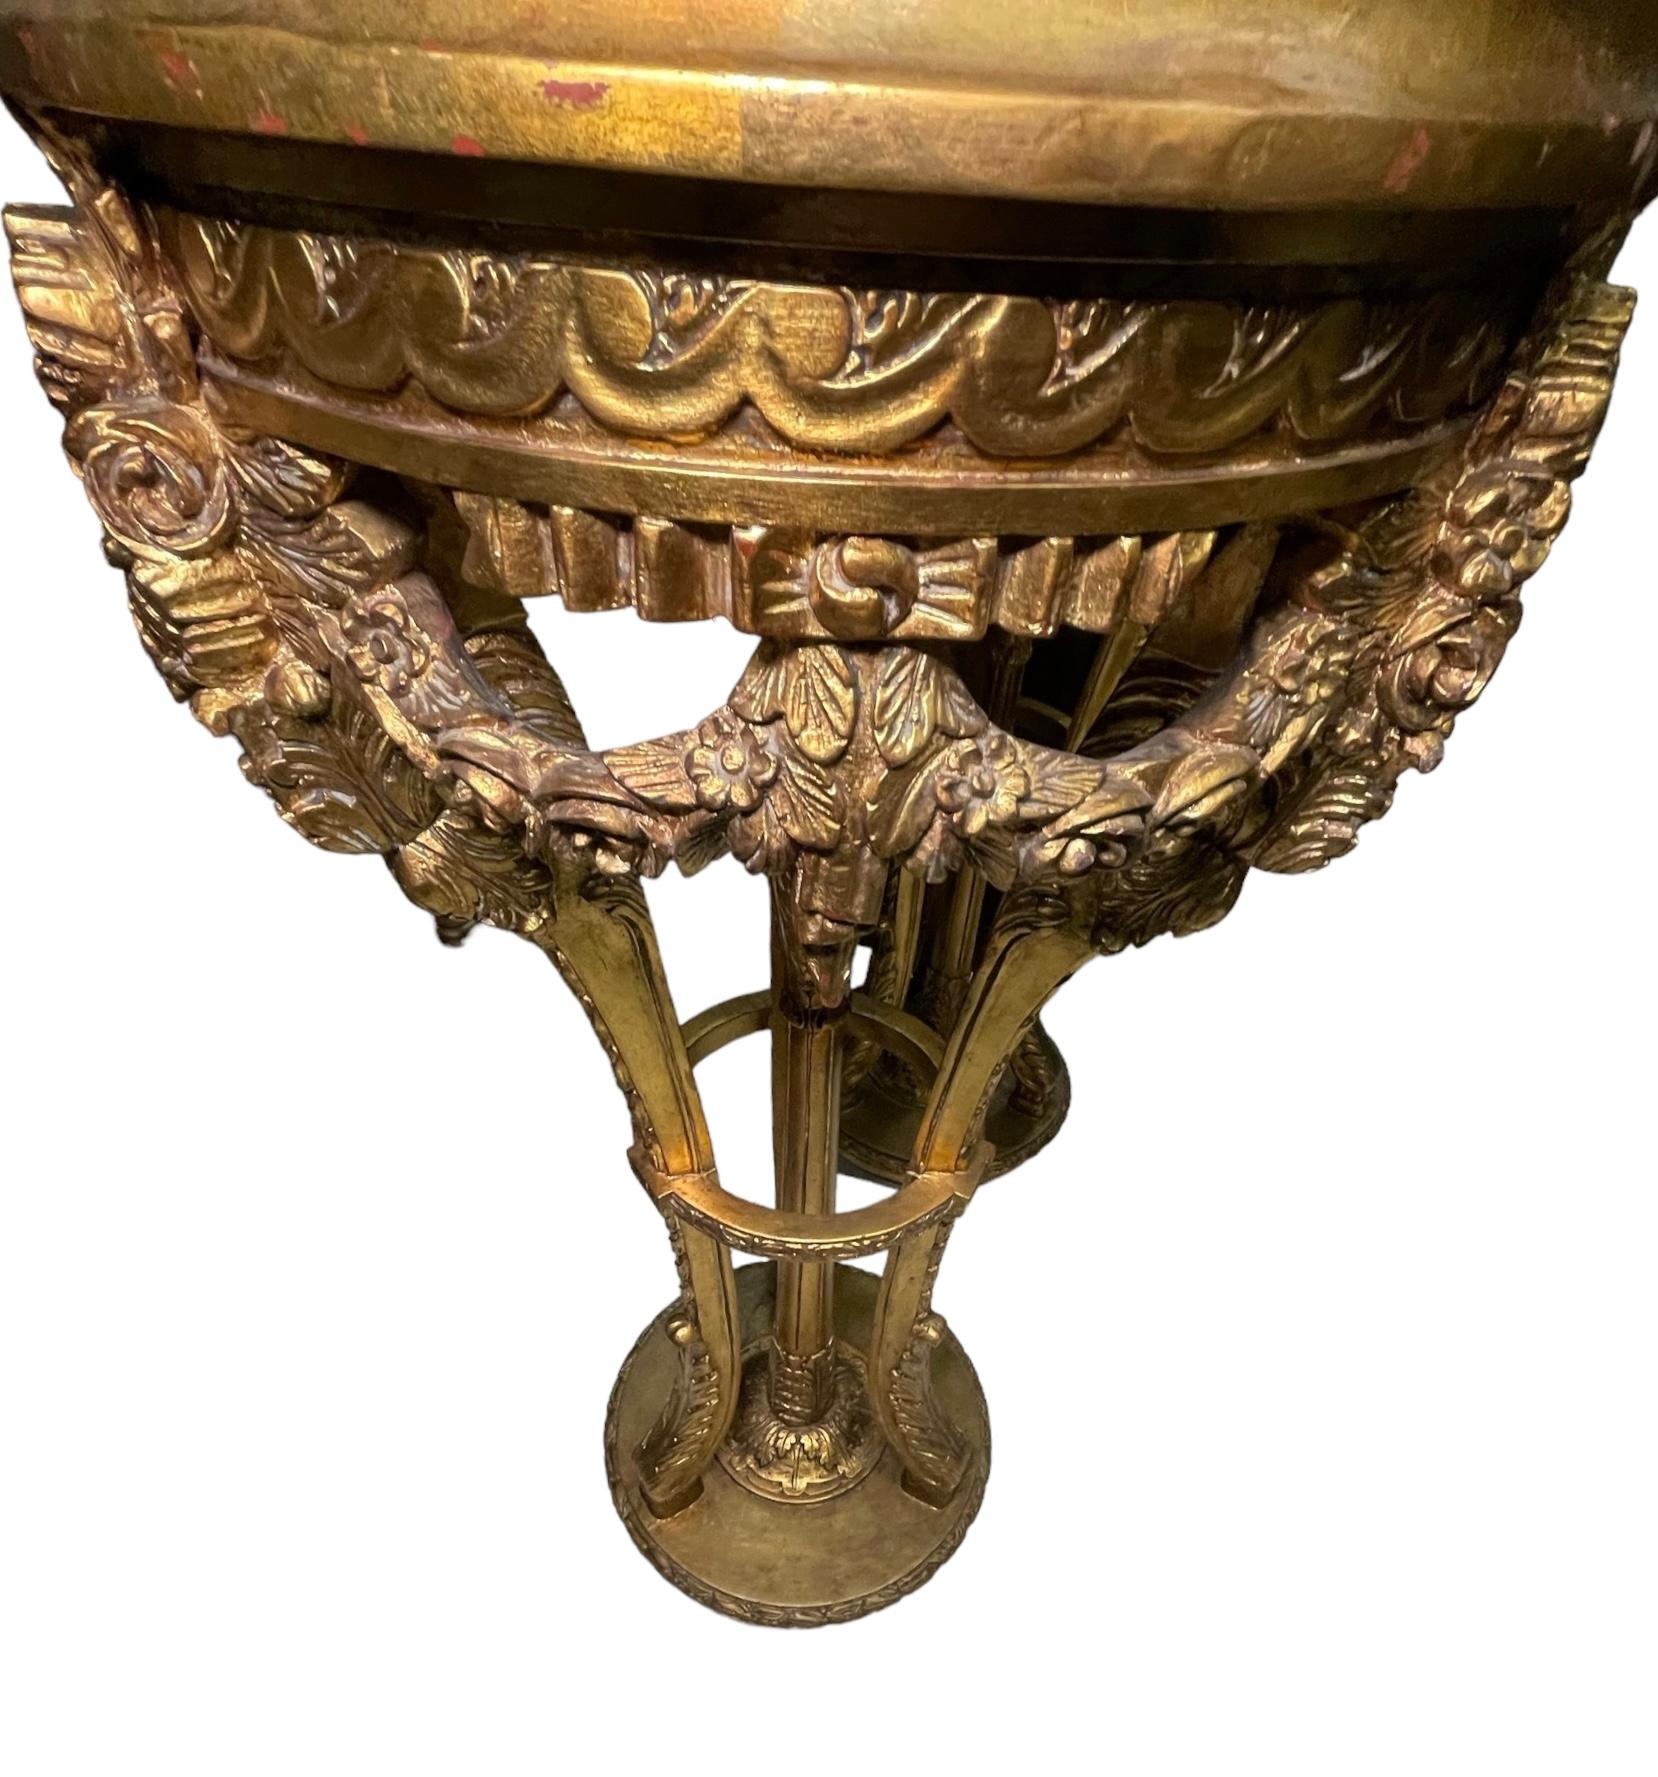 Dies ist ein Paar von Louis XVI-Stil Marmor und Giltwood Sockeln. Es zeigt eine runde, beigefarbene Marmorplatte, die mit vergoldetem Holz umrahmt ist, über einem Dreibein, das aus Cabriole-Beinen besteht und im oberen und unteren Bereich mit